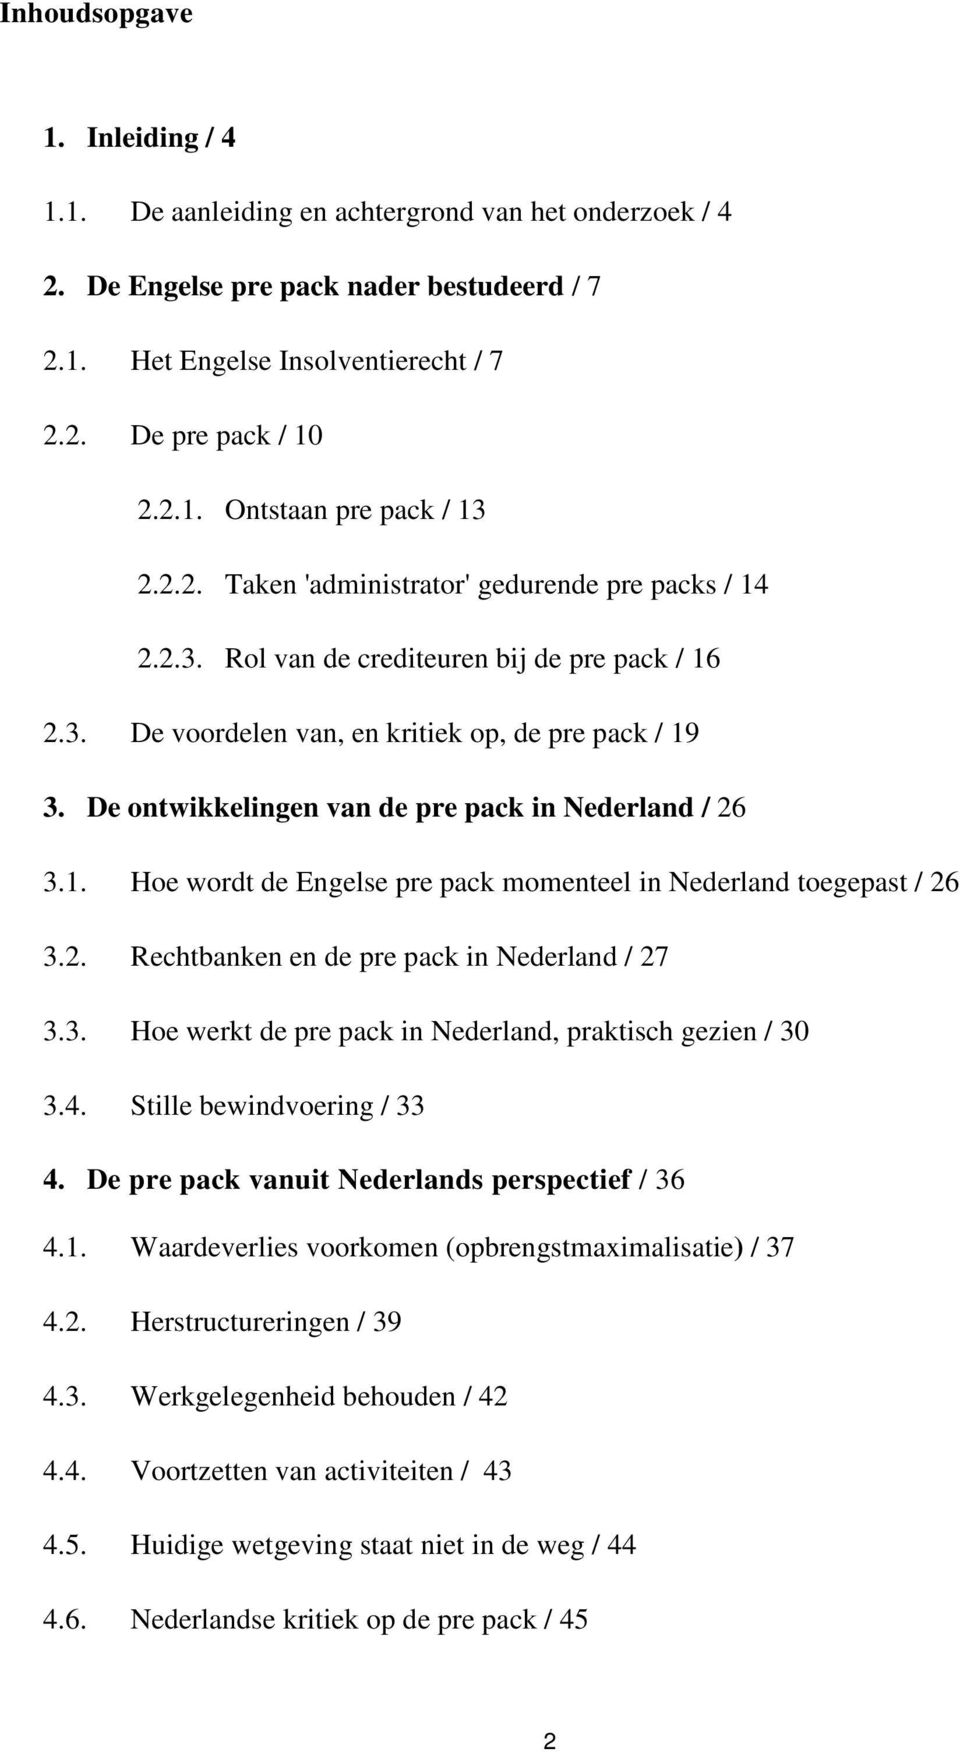 De ontwikkelingen van de pre pack in Nederland / 26 3.1. Hoe wordt de Engelse pre pack momenteel in Nederland toegepast / 26 3.2. Rechtbanken en de pre pack in Nederland / 27 3.3. Hoe werkt de pre pack in Nederland, praktisch gezien / 30 3.